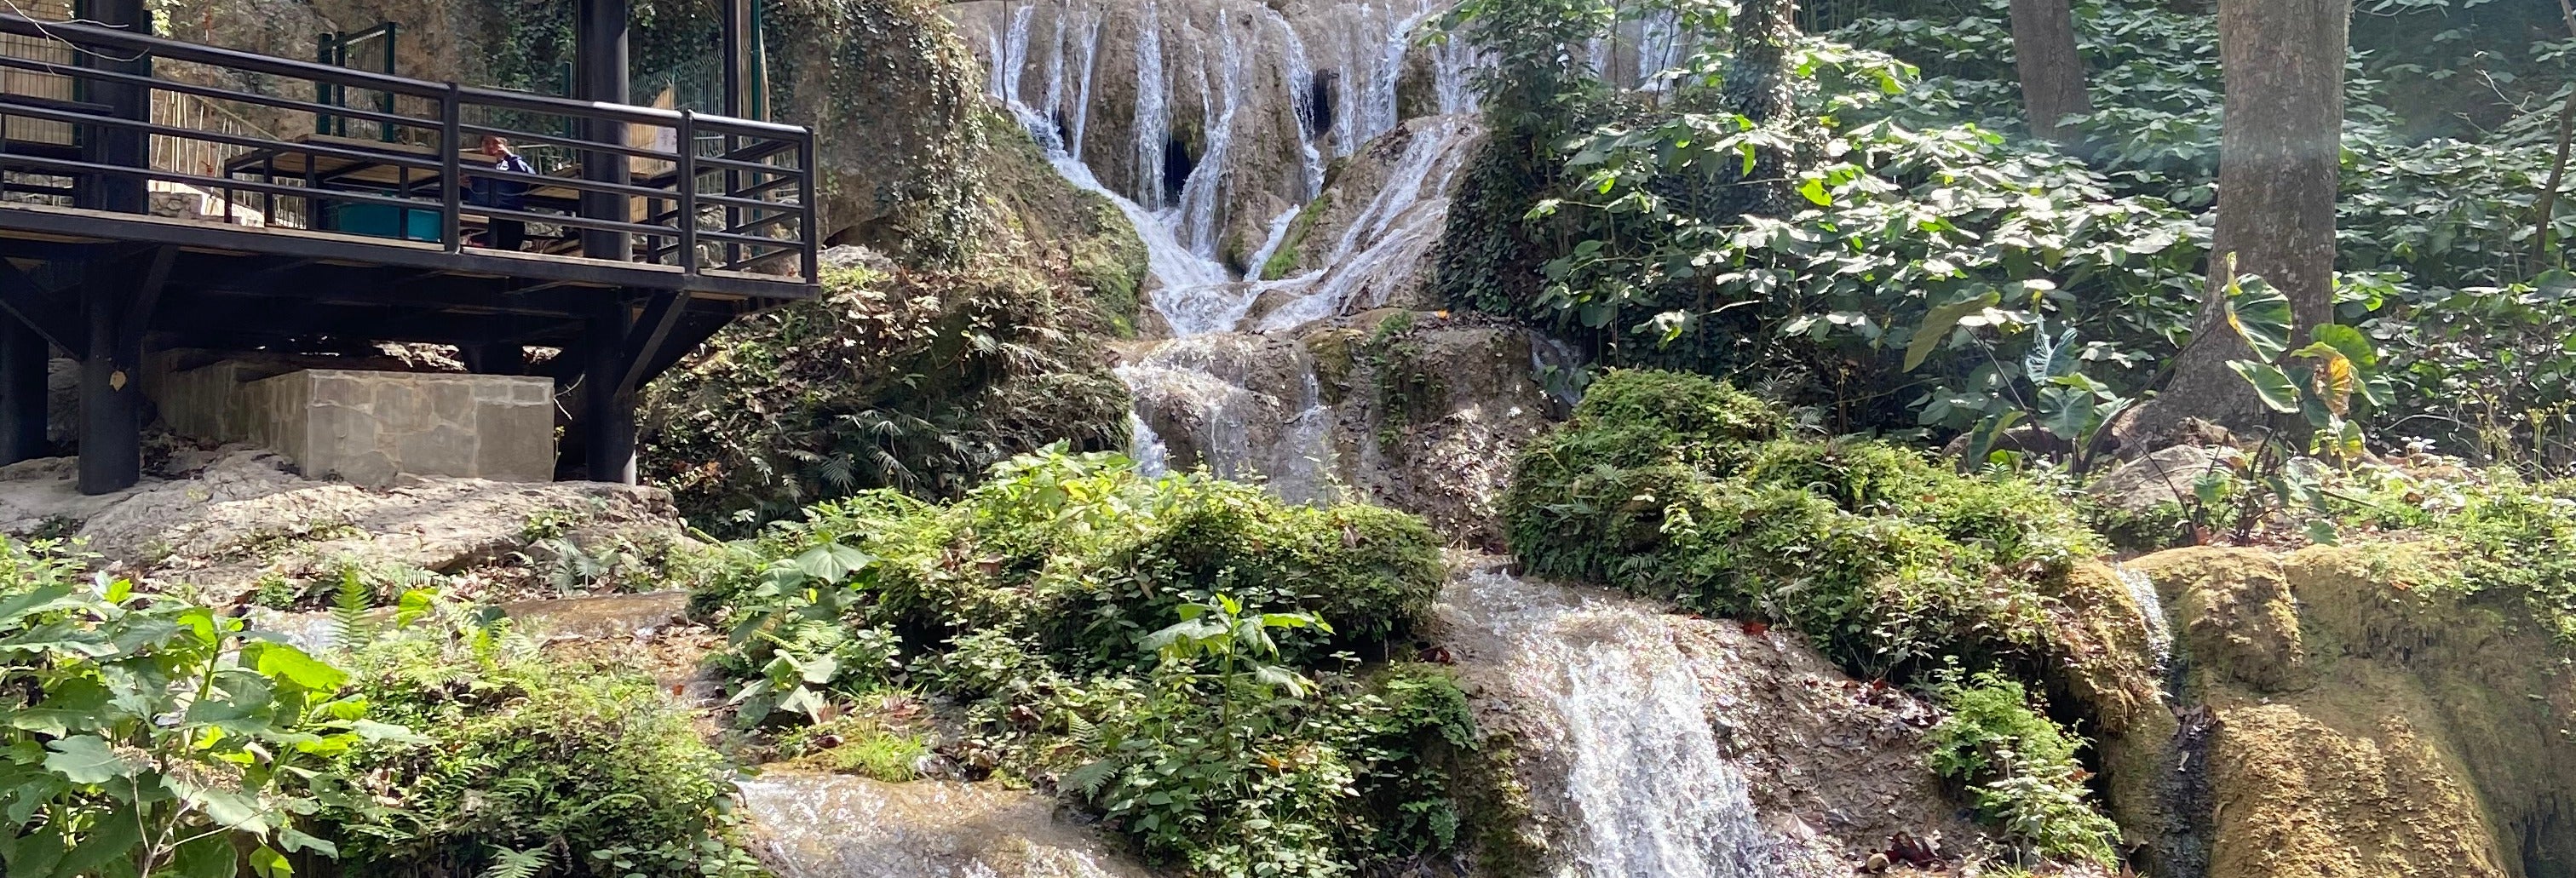 Cola de Caballo Waterfall & Santiago Pueblo Mágico